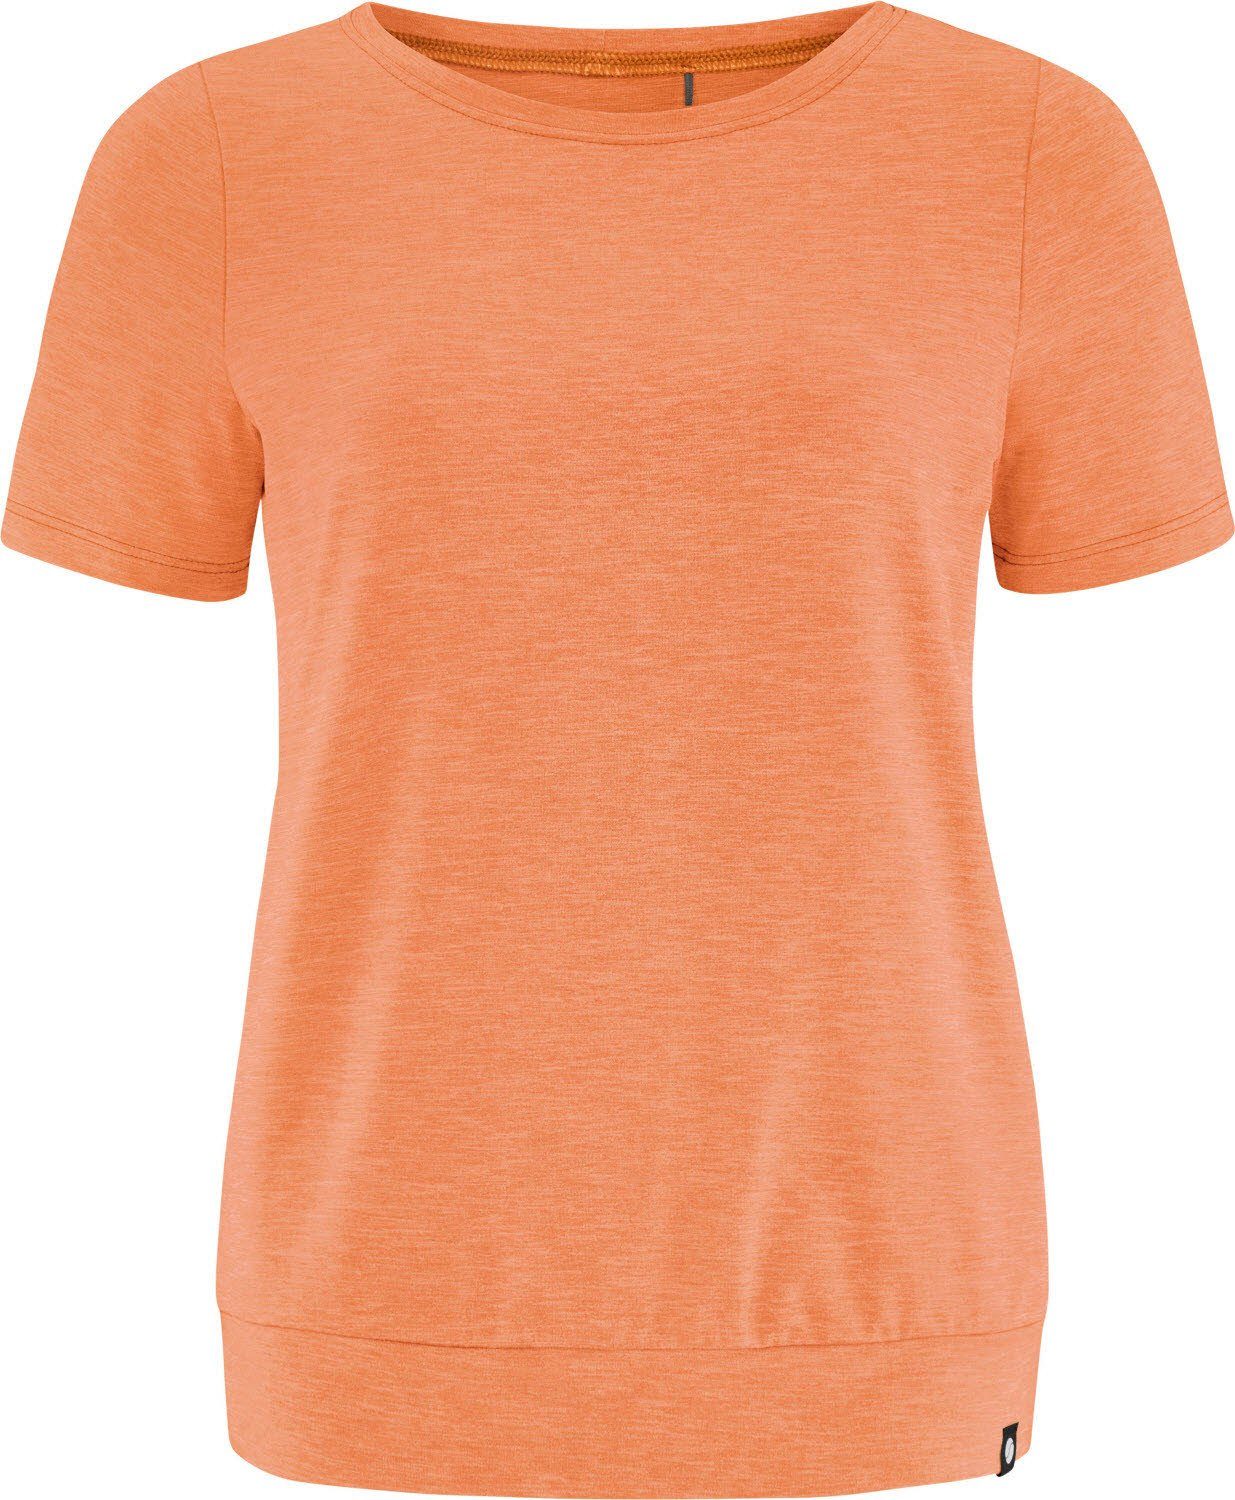 SUNDIAL-MELIERT SCHNEIDER Sportswear Trainingsshirt Pennyw-Shirt